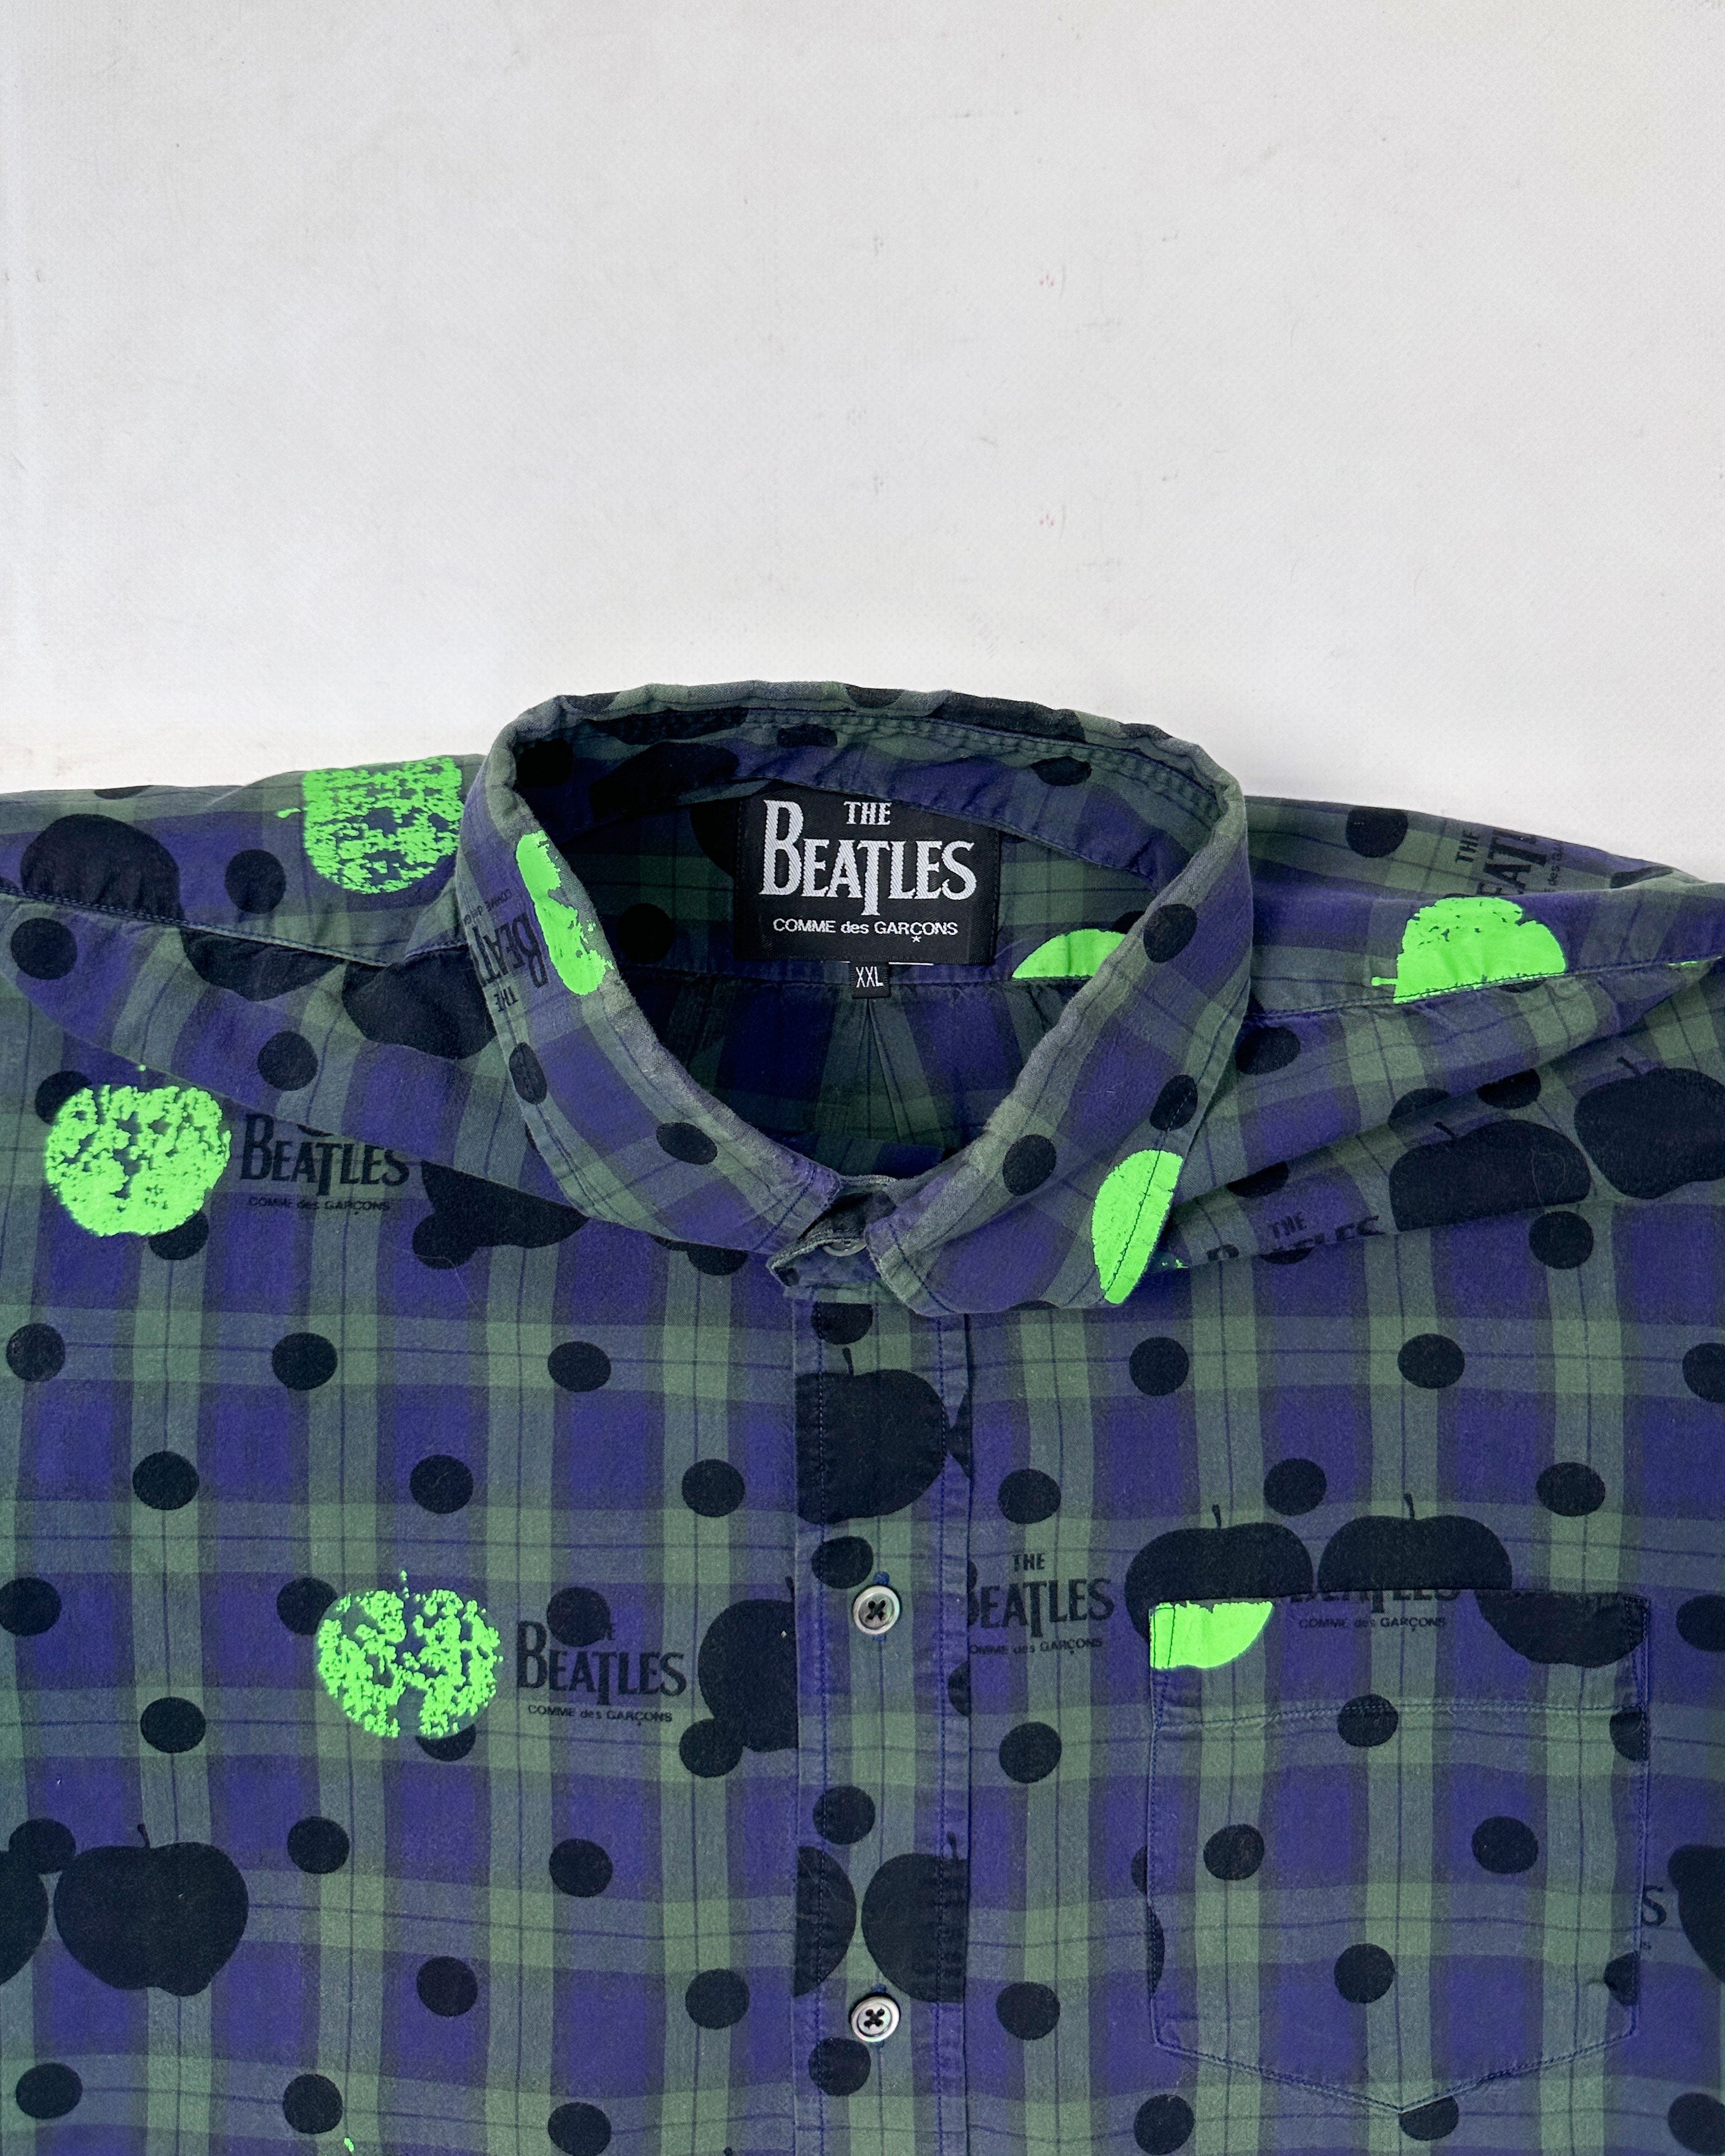 Comme des Garçons X The Beatles Printed Shirt 2012 – Vintage TTS